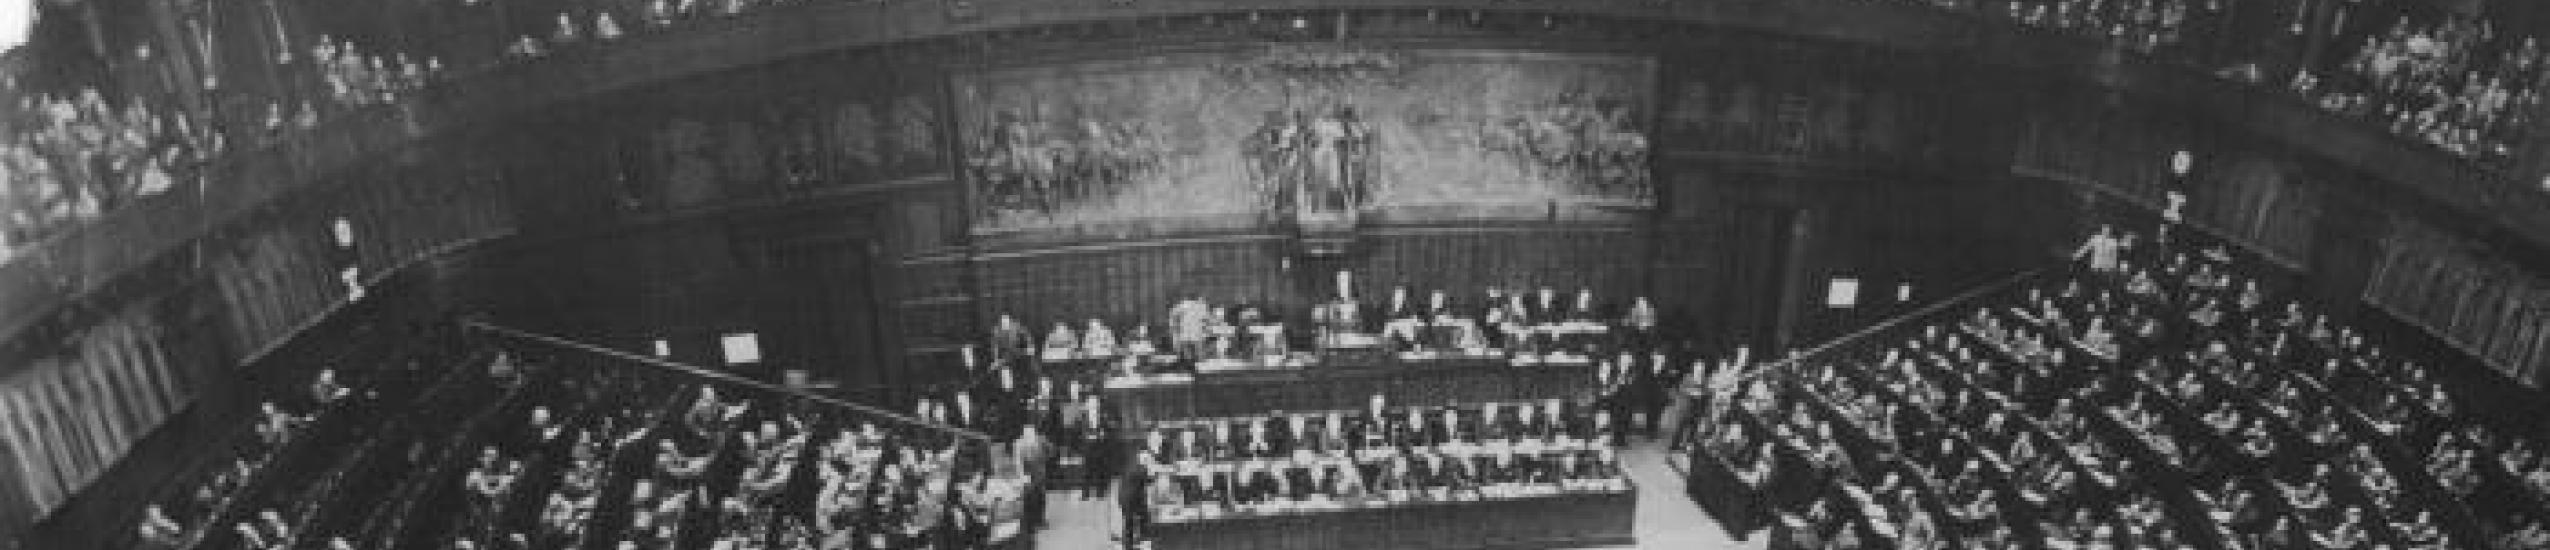 Dalla costituente al centrismo, l’italia del dopoguerra in sei incontri a palazzo doria spinola